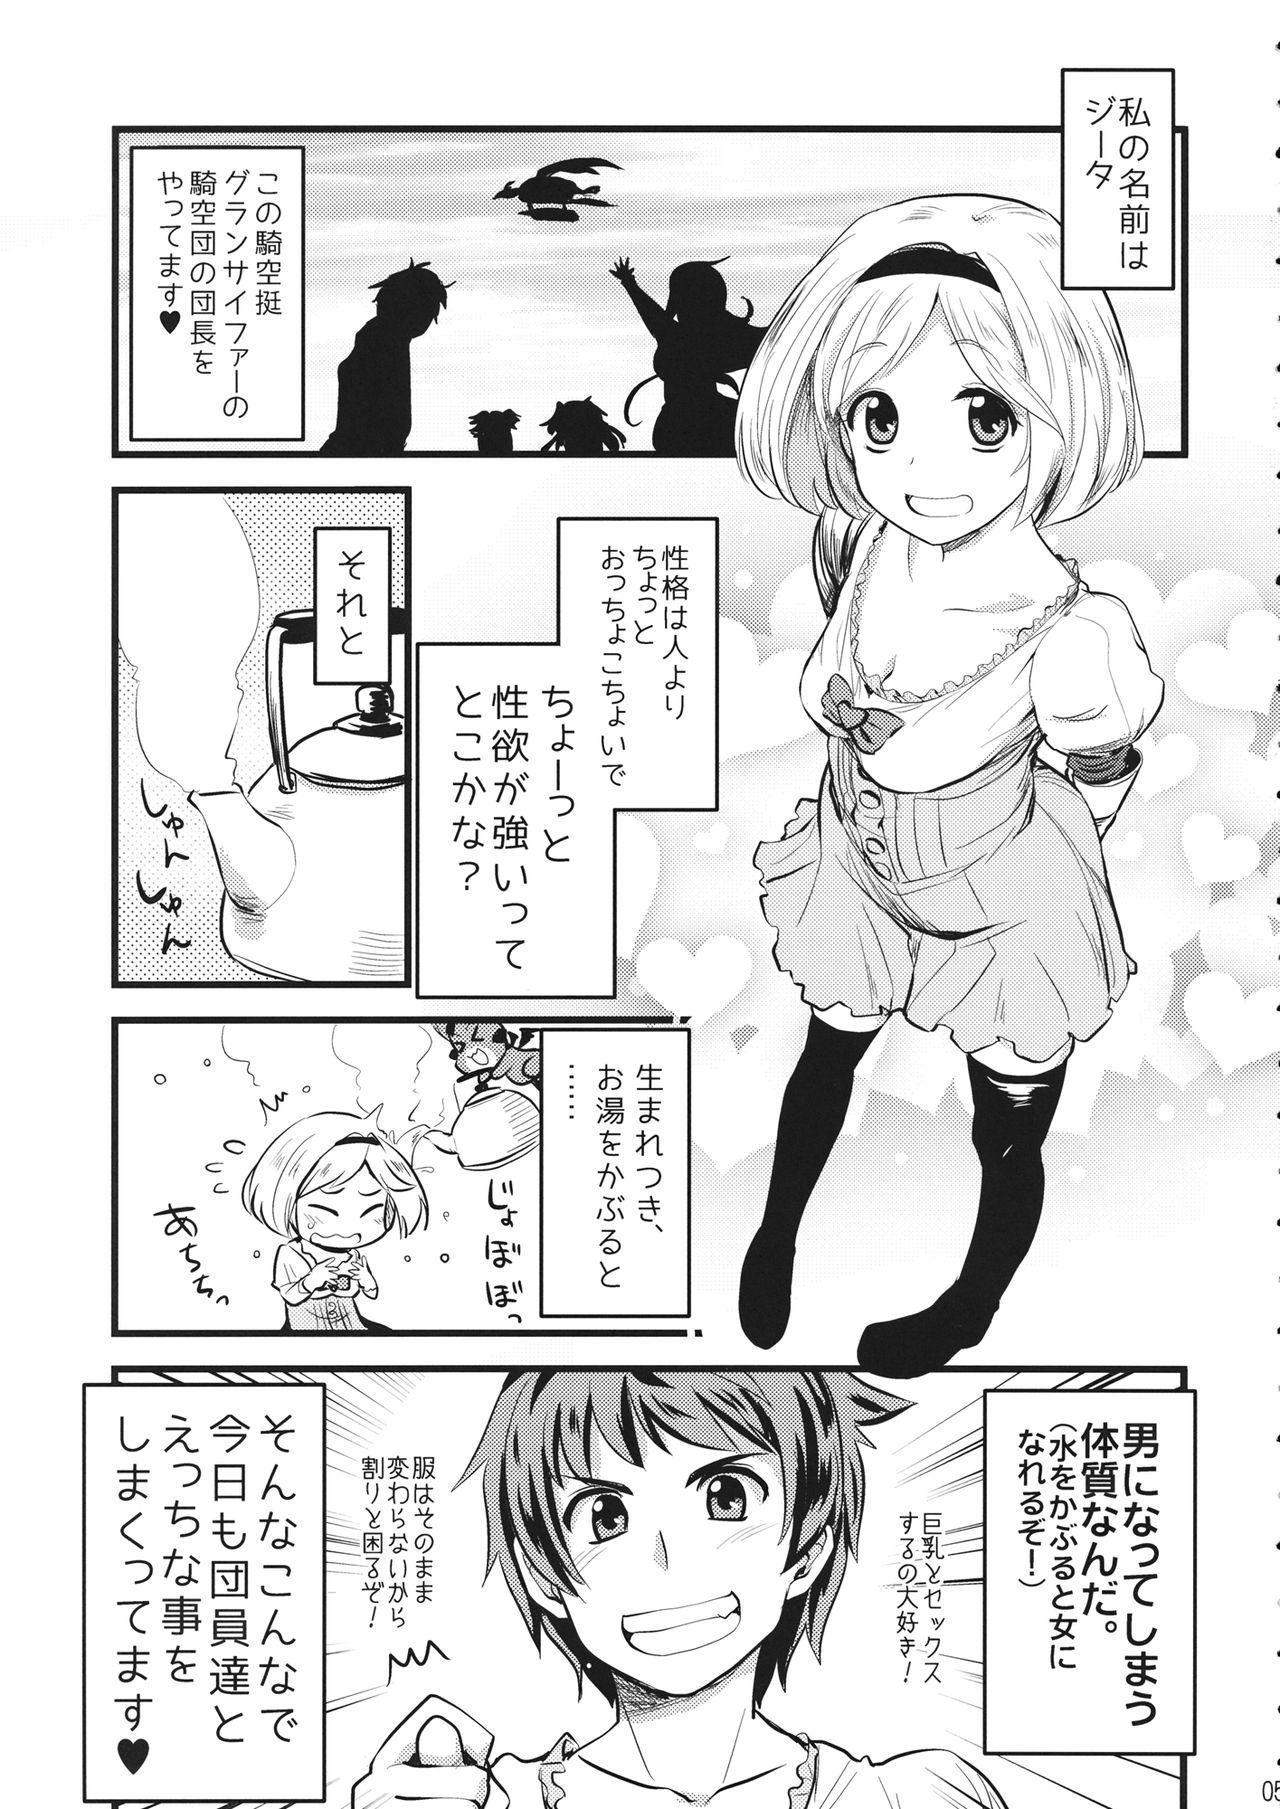 Best Blowjobs Mizu o Kaburu to Onna ni Nacchau Fuzaketa Taishitsu. - Granblue fantasy Soapy Massage - Page 4